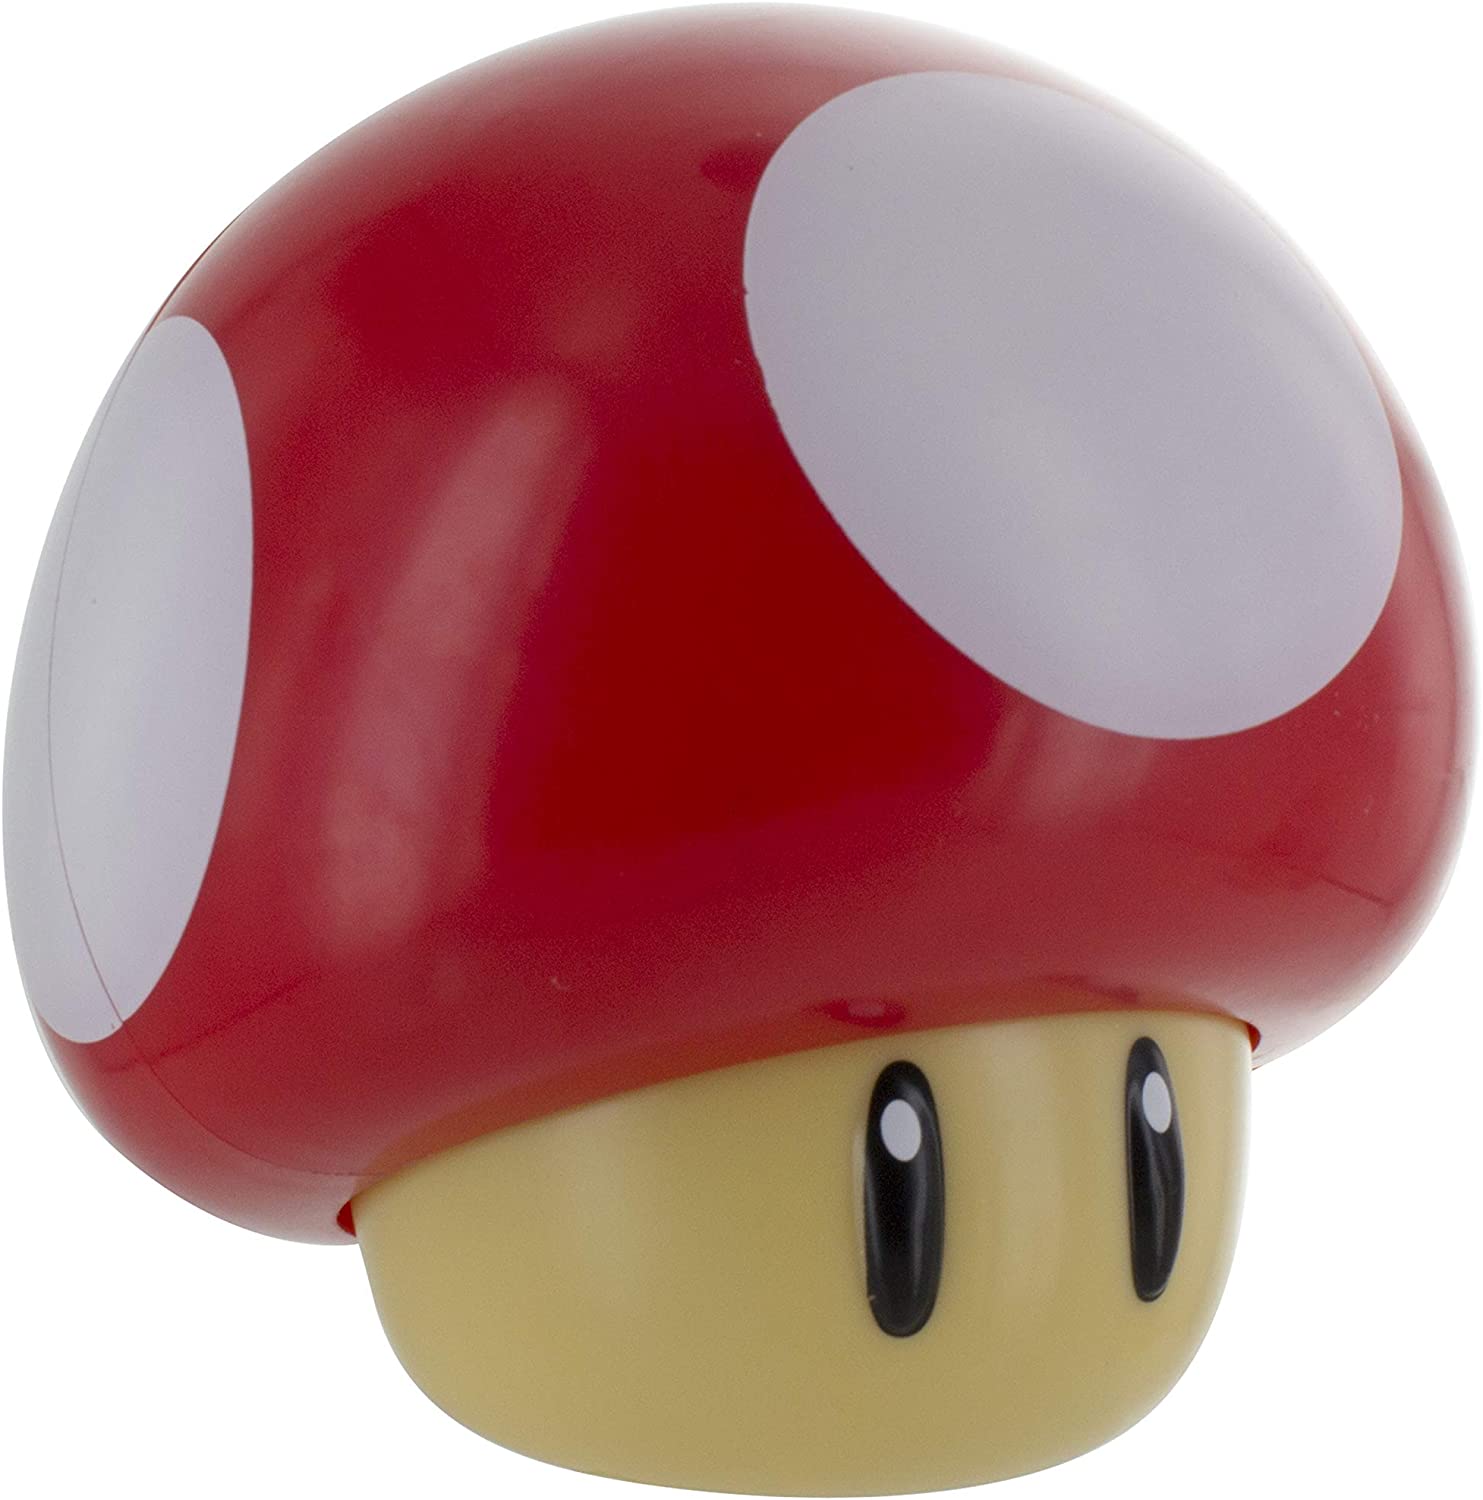 Lamp Super Mario